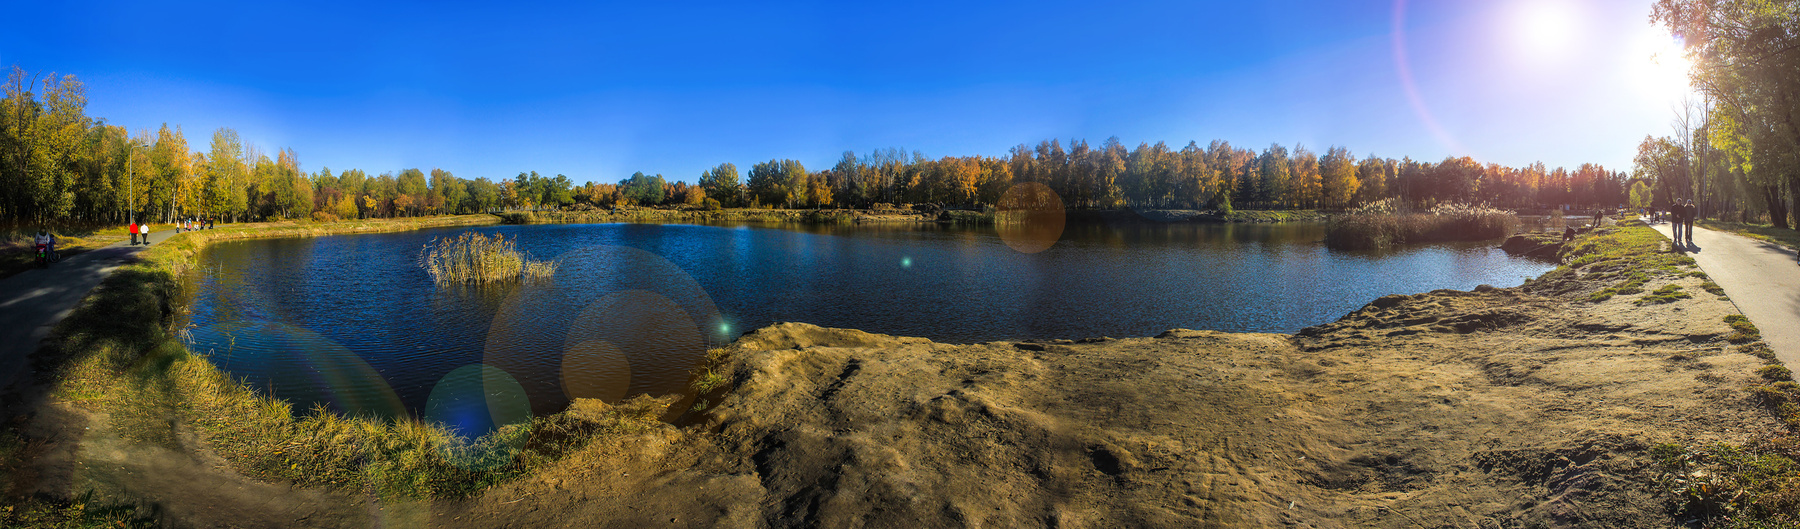 серия осенних панорам осенЬ.природа вода красота золотая осень